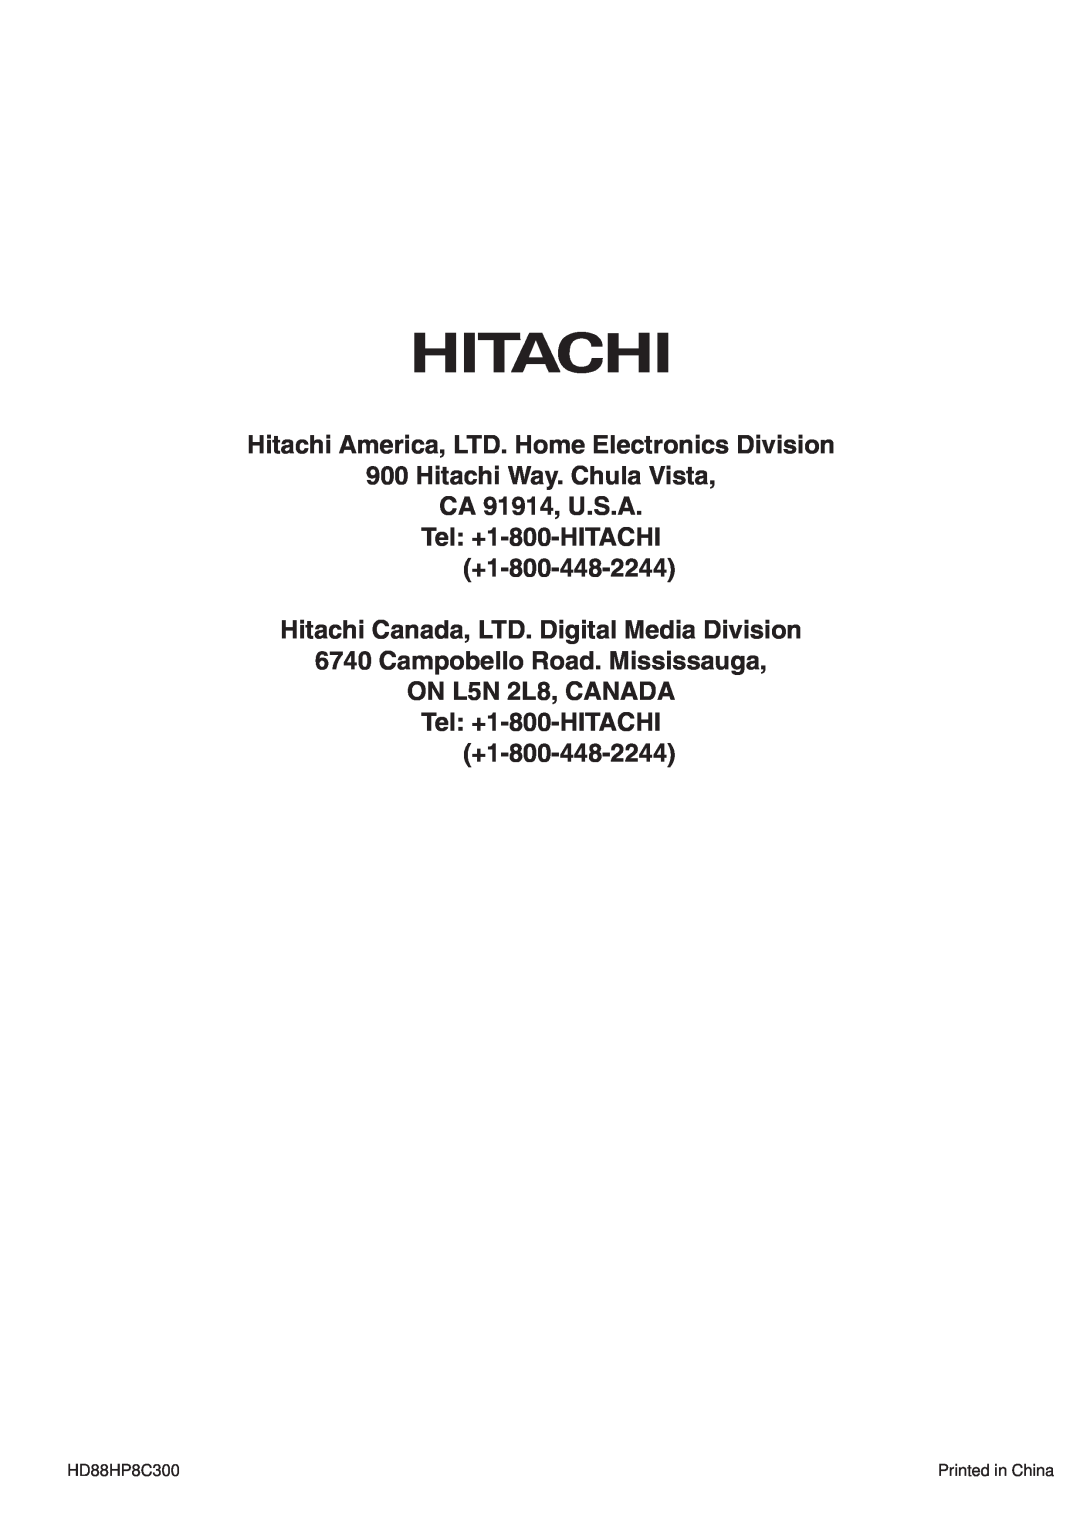 Hitachi PW1A user manual Hitachi Way. Chula Vista CA 91914, U.S.A Tel +1-800-HITACHI, +1-800-448-2244, HD88HP8C300 